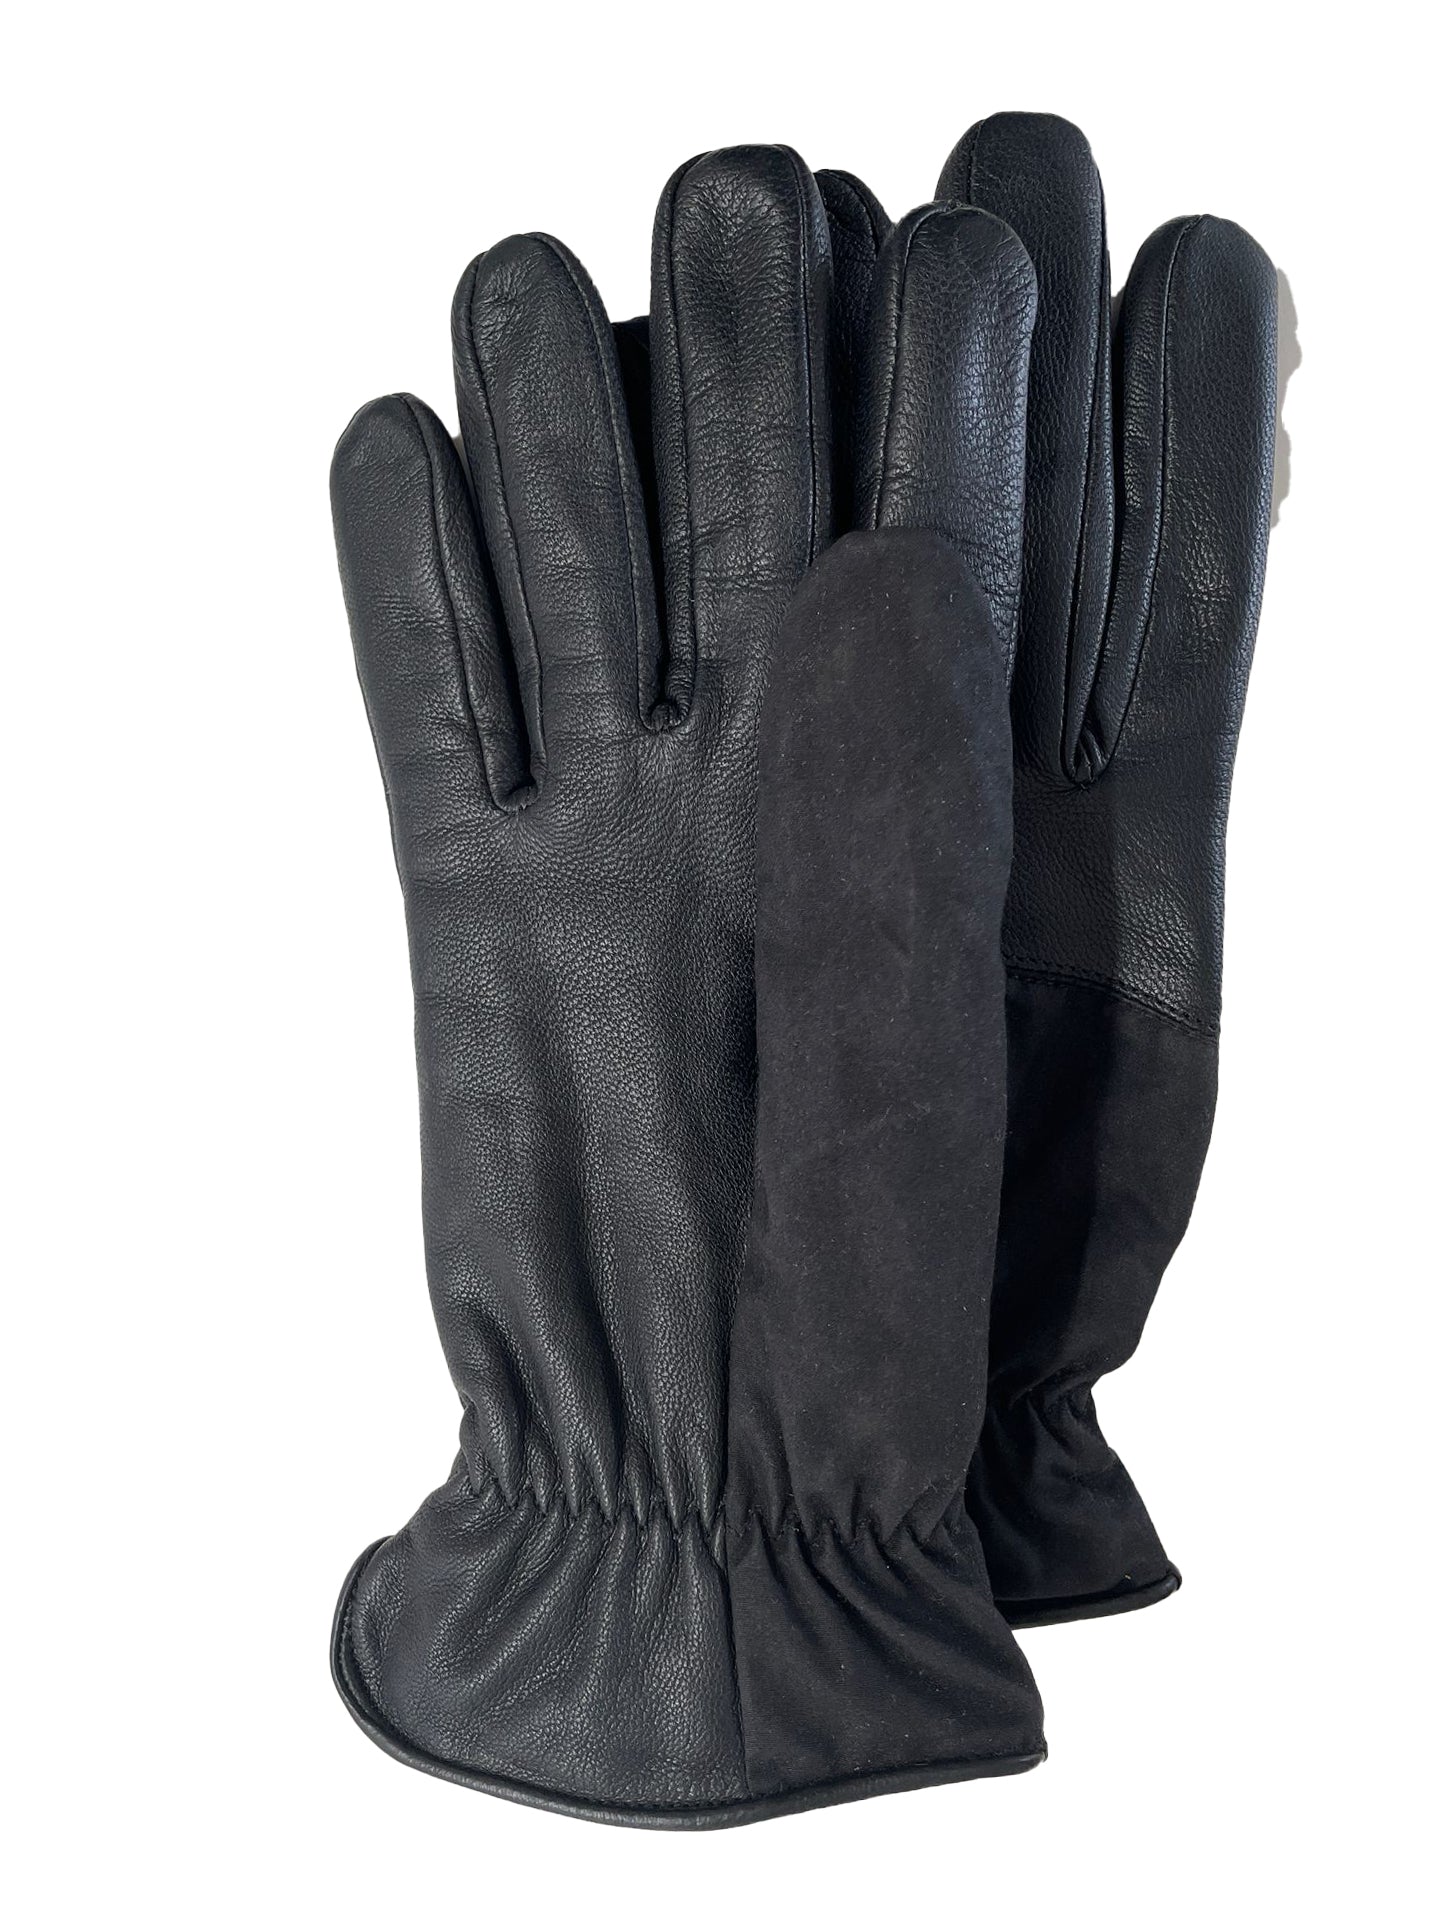 Ölzeug Handschuhe in schwarz & braun- Restposten